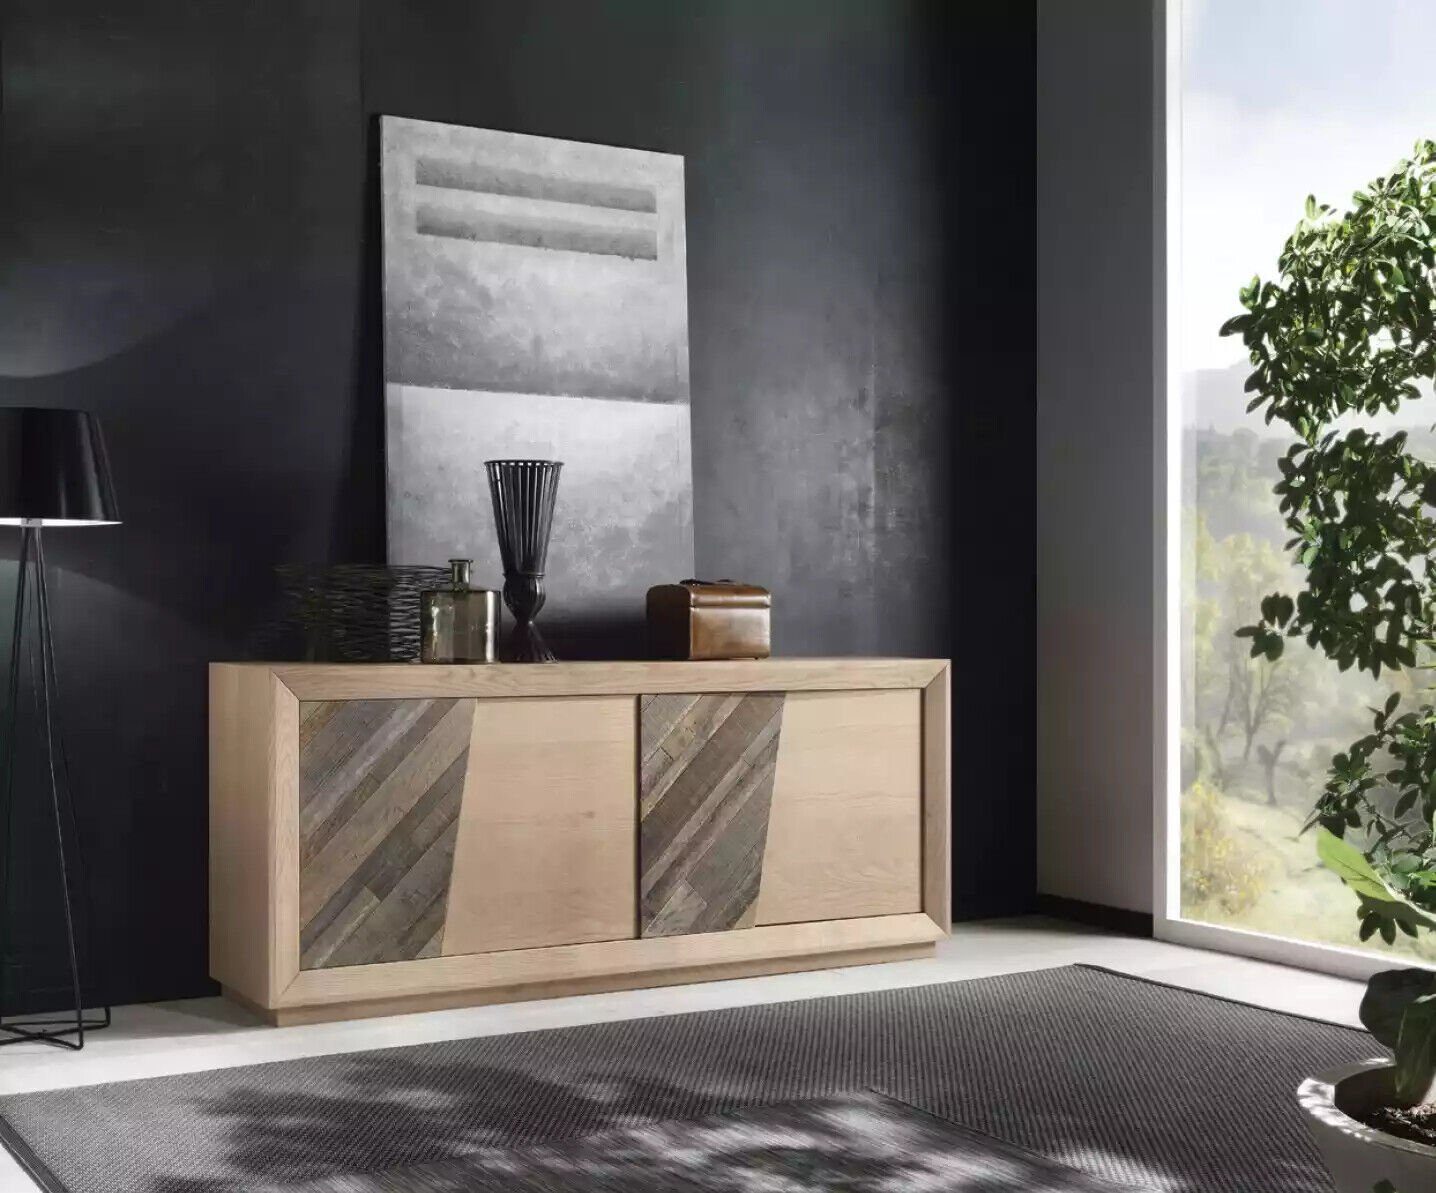 JVmoebel Sideboard Wohnzimmer Italy schaukelnd Luxus, Sideboard Modern braun neu In Made